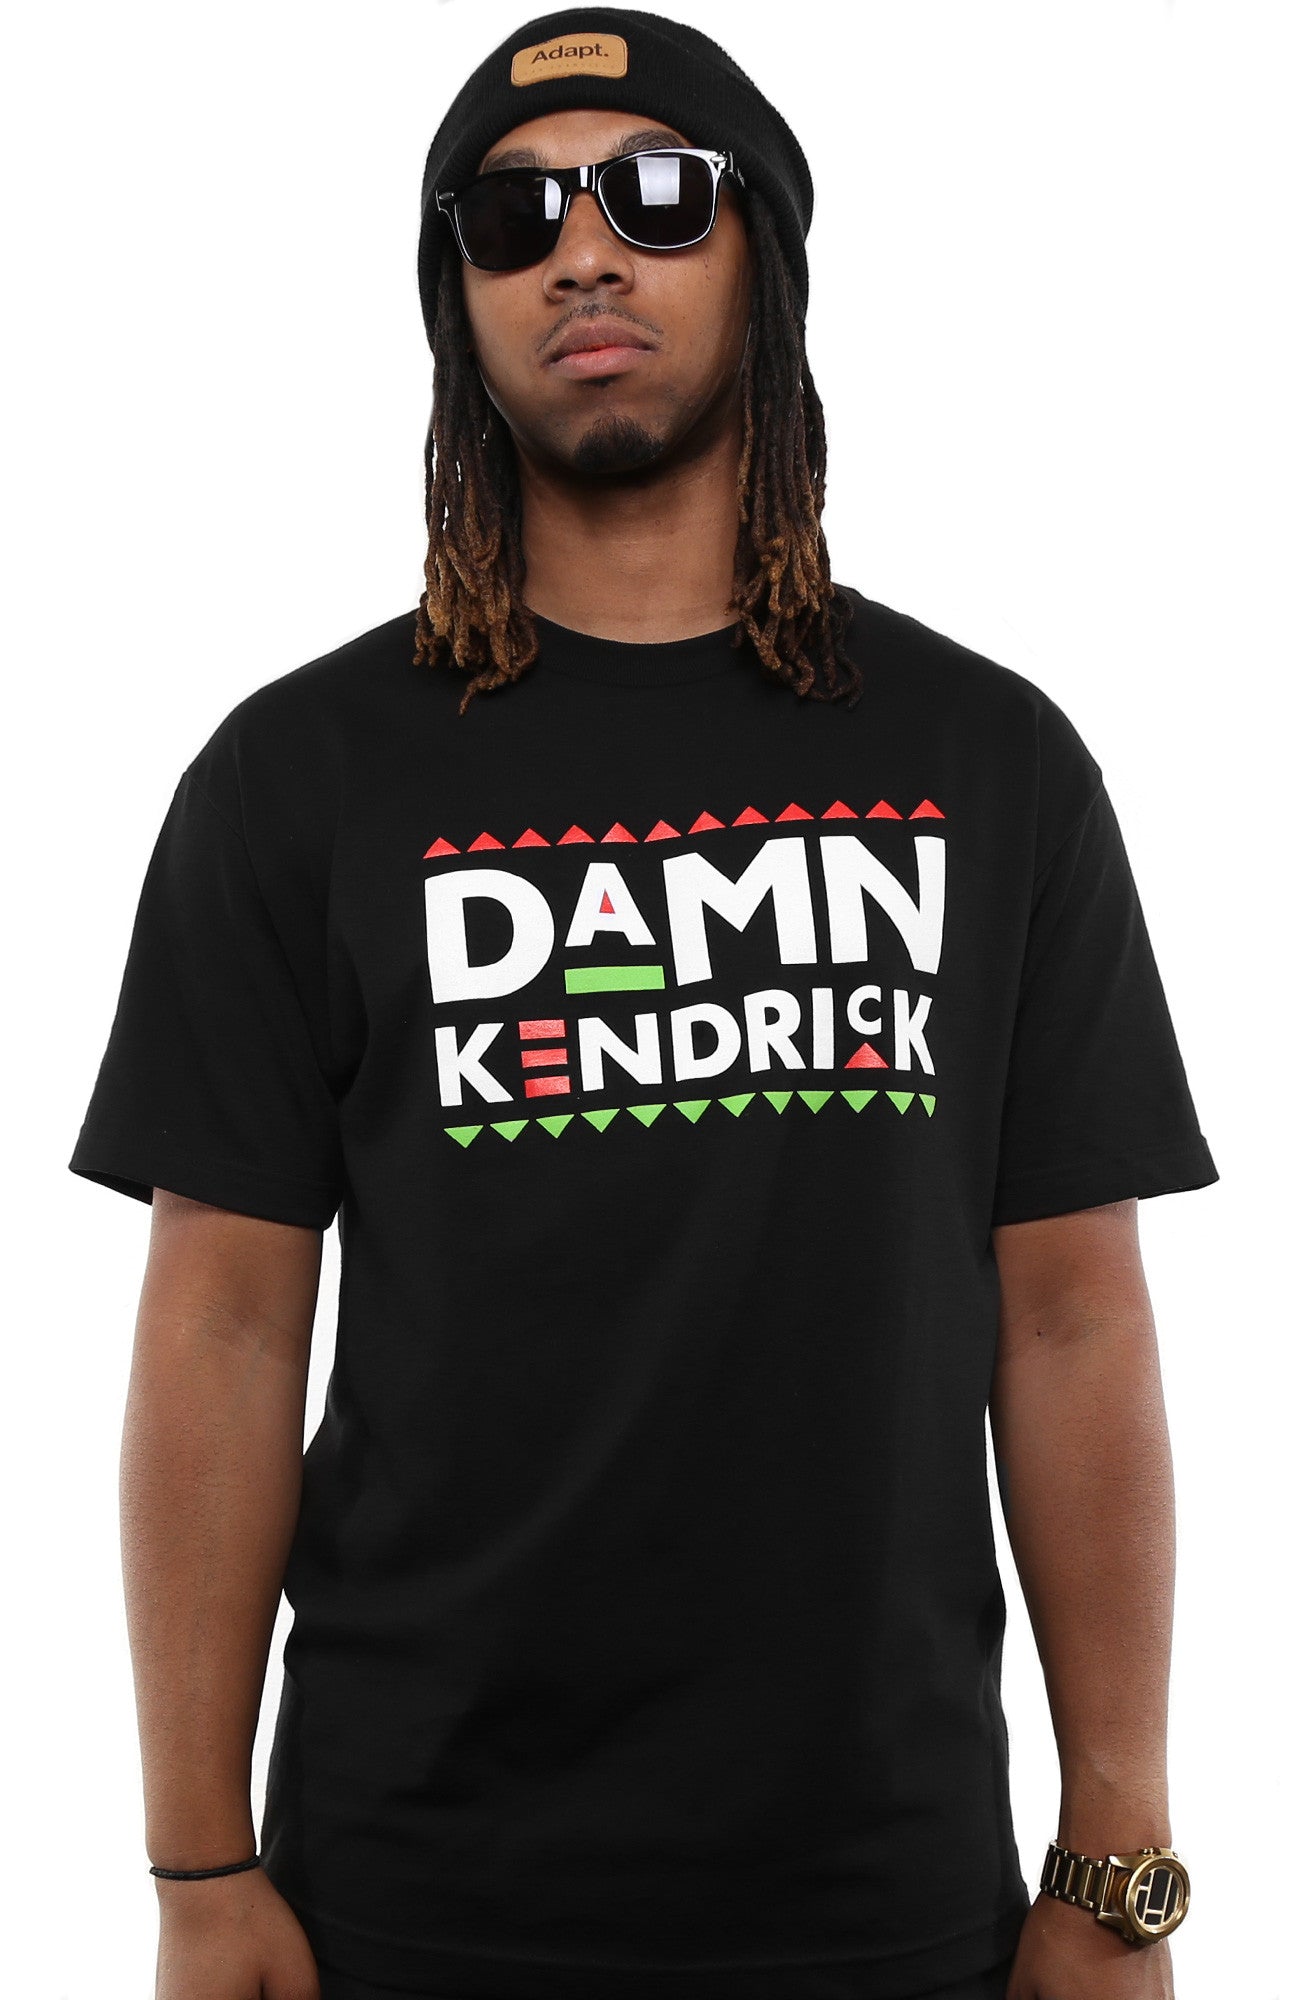 Damn Kendrick (Men's Black Tee)